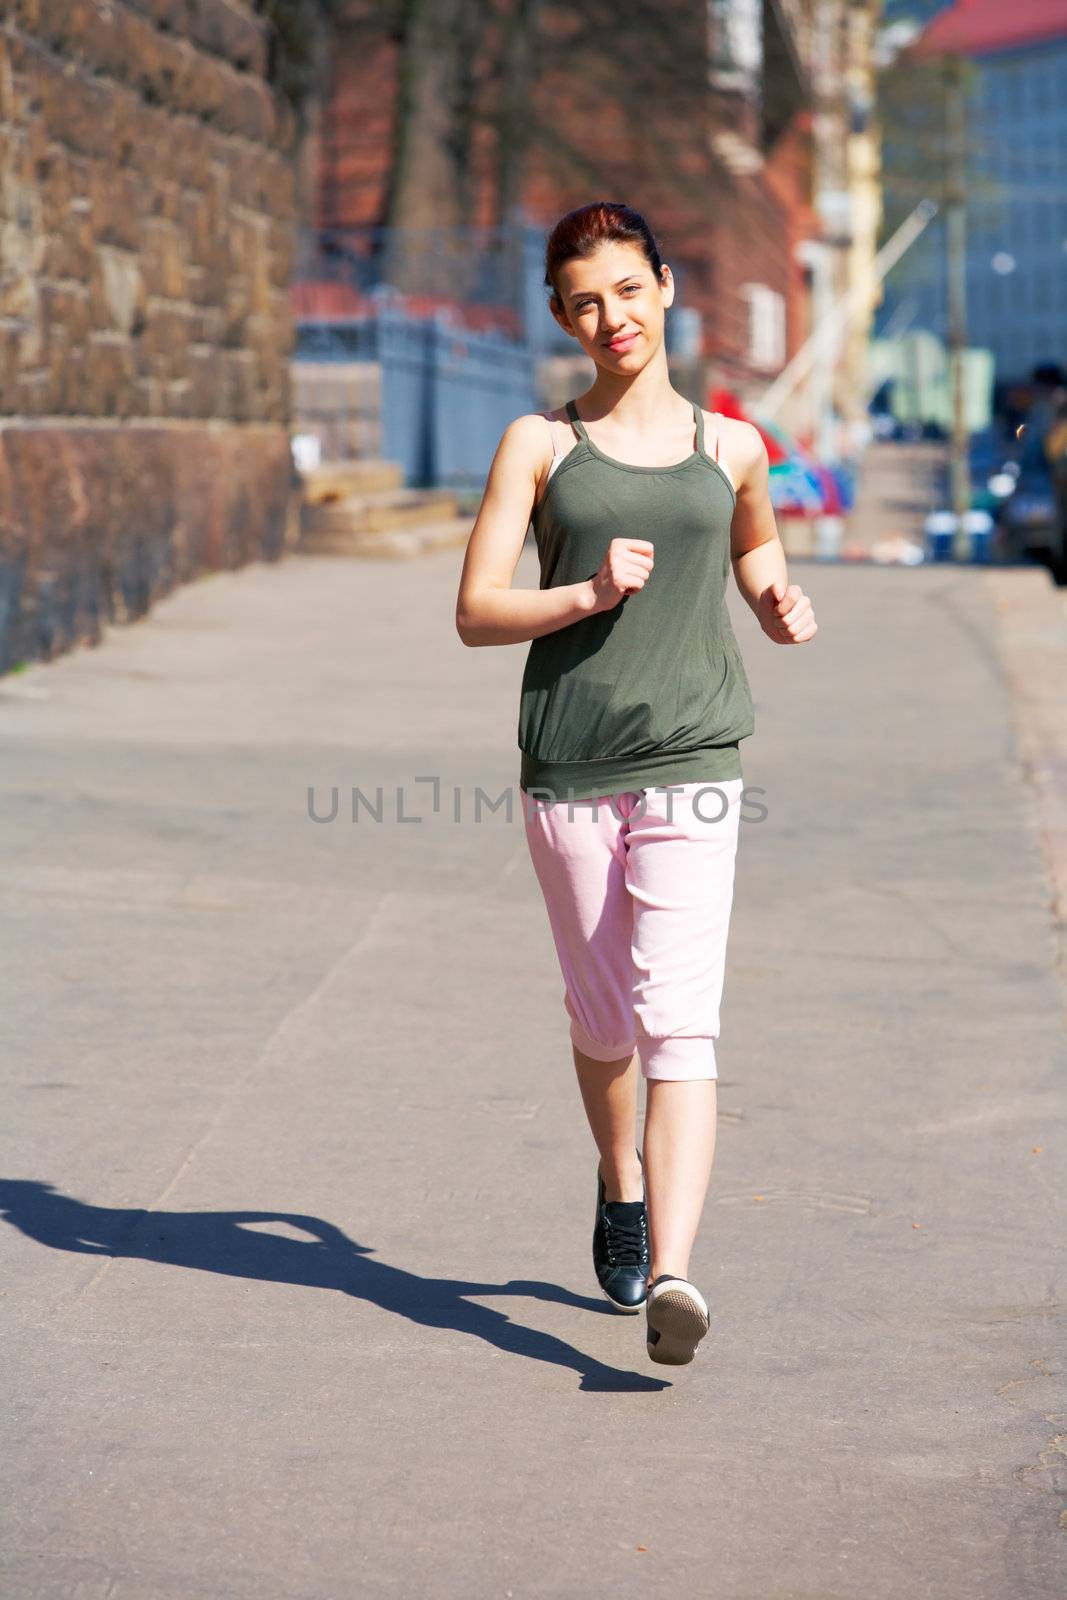 Teenage girl jogging on sidewalk in city, looking at camera